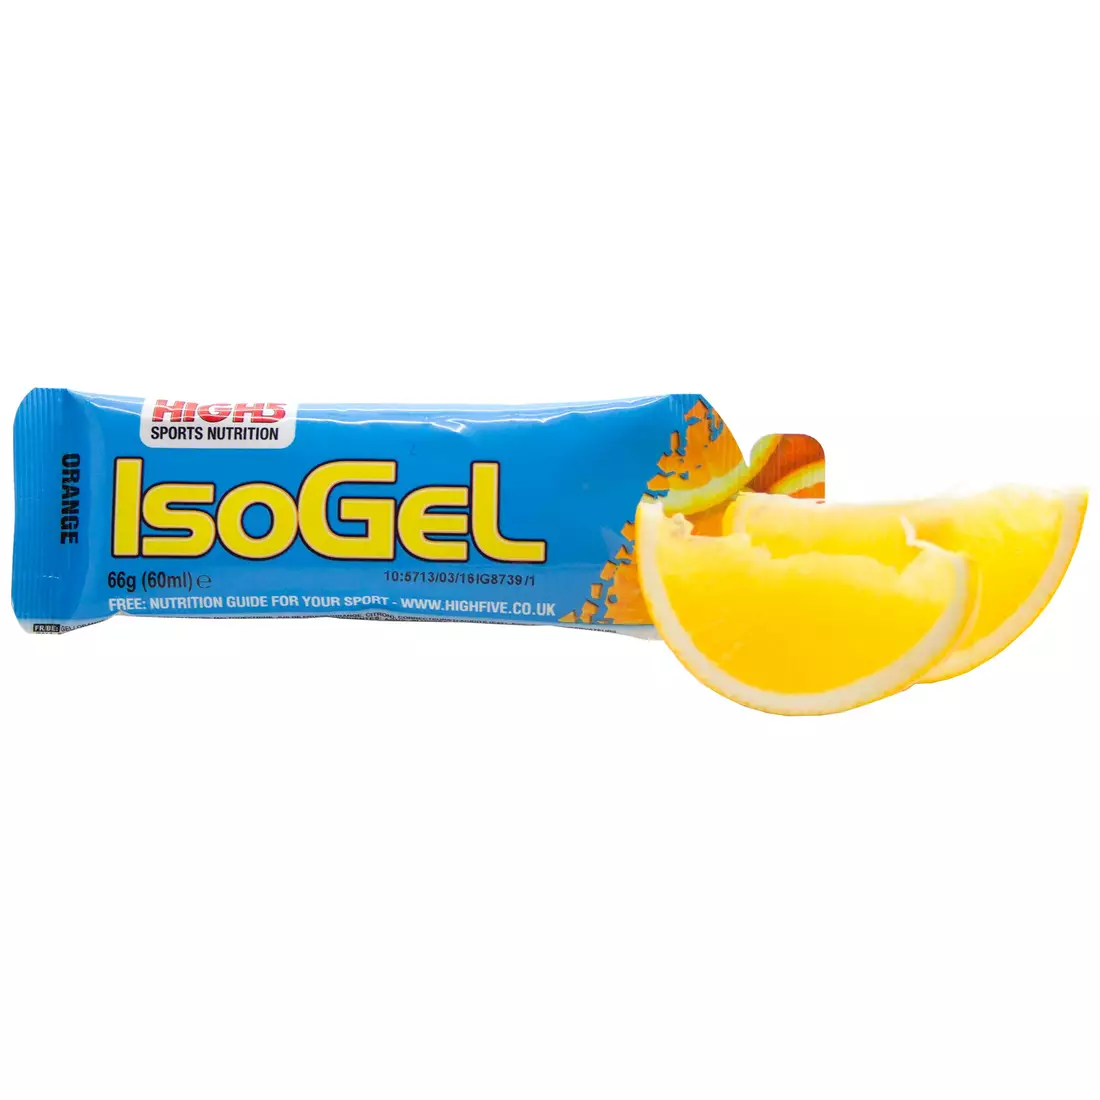 HIGH5 IsoGel aromă de gel izotonic: Capacitate portocală. 60 ml